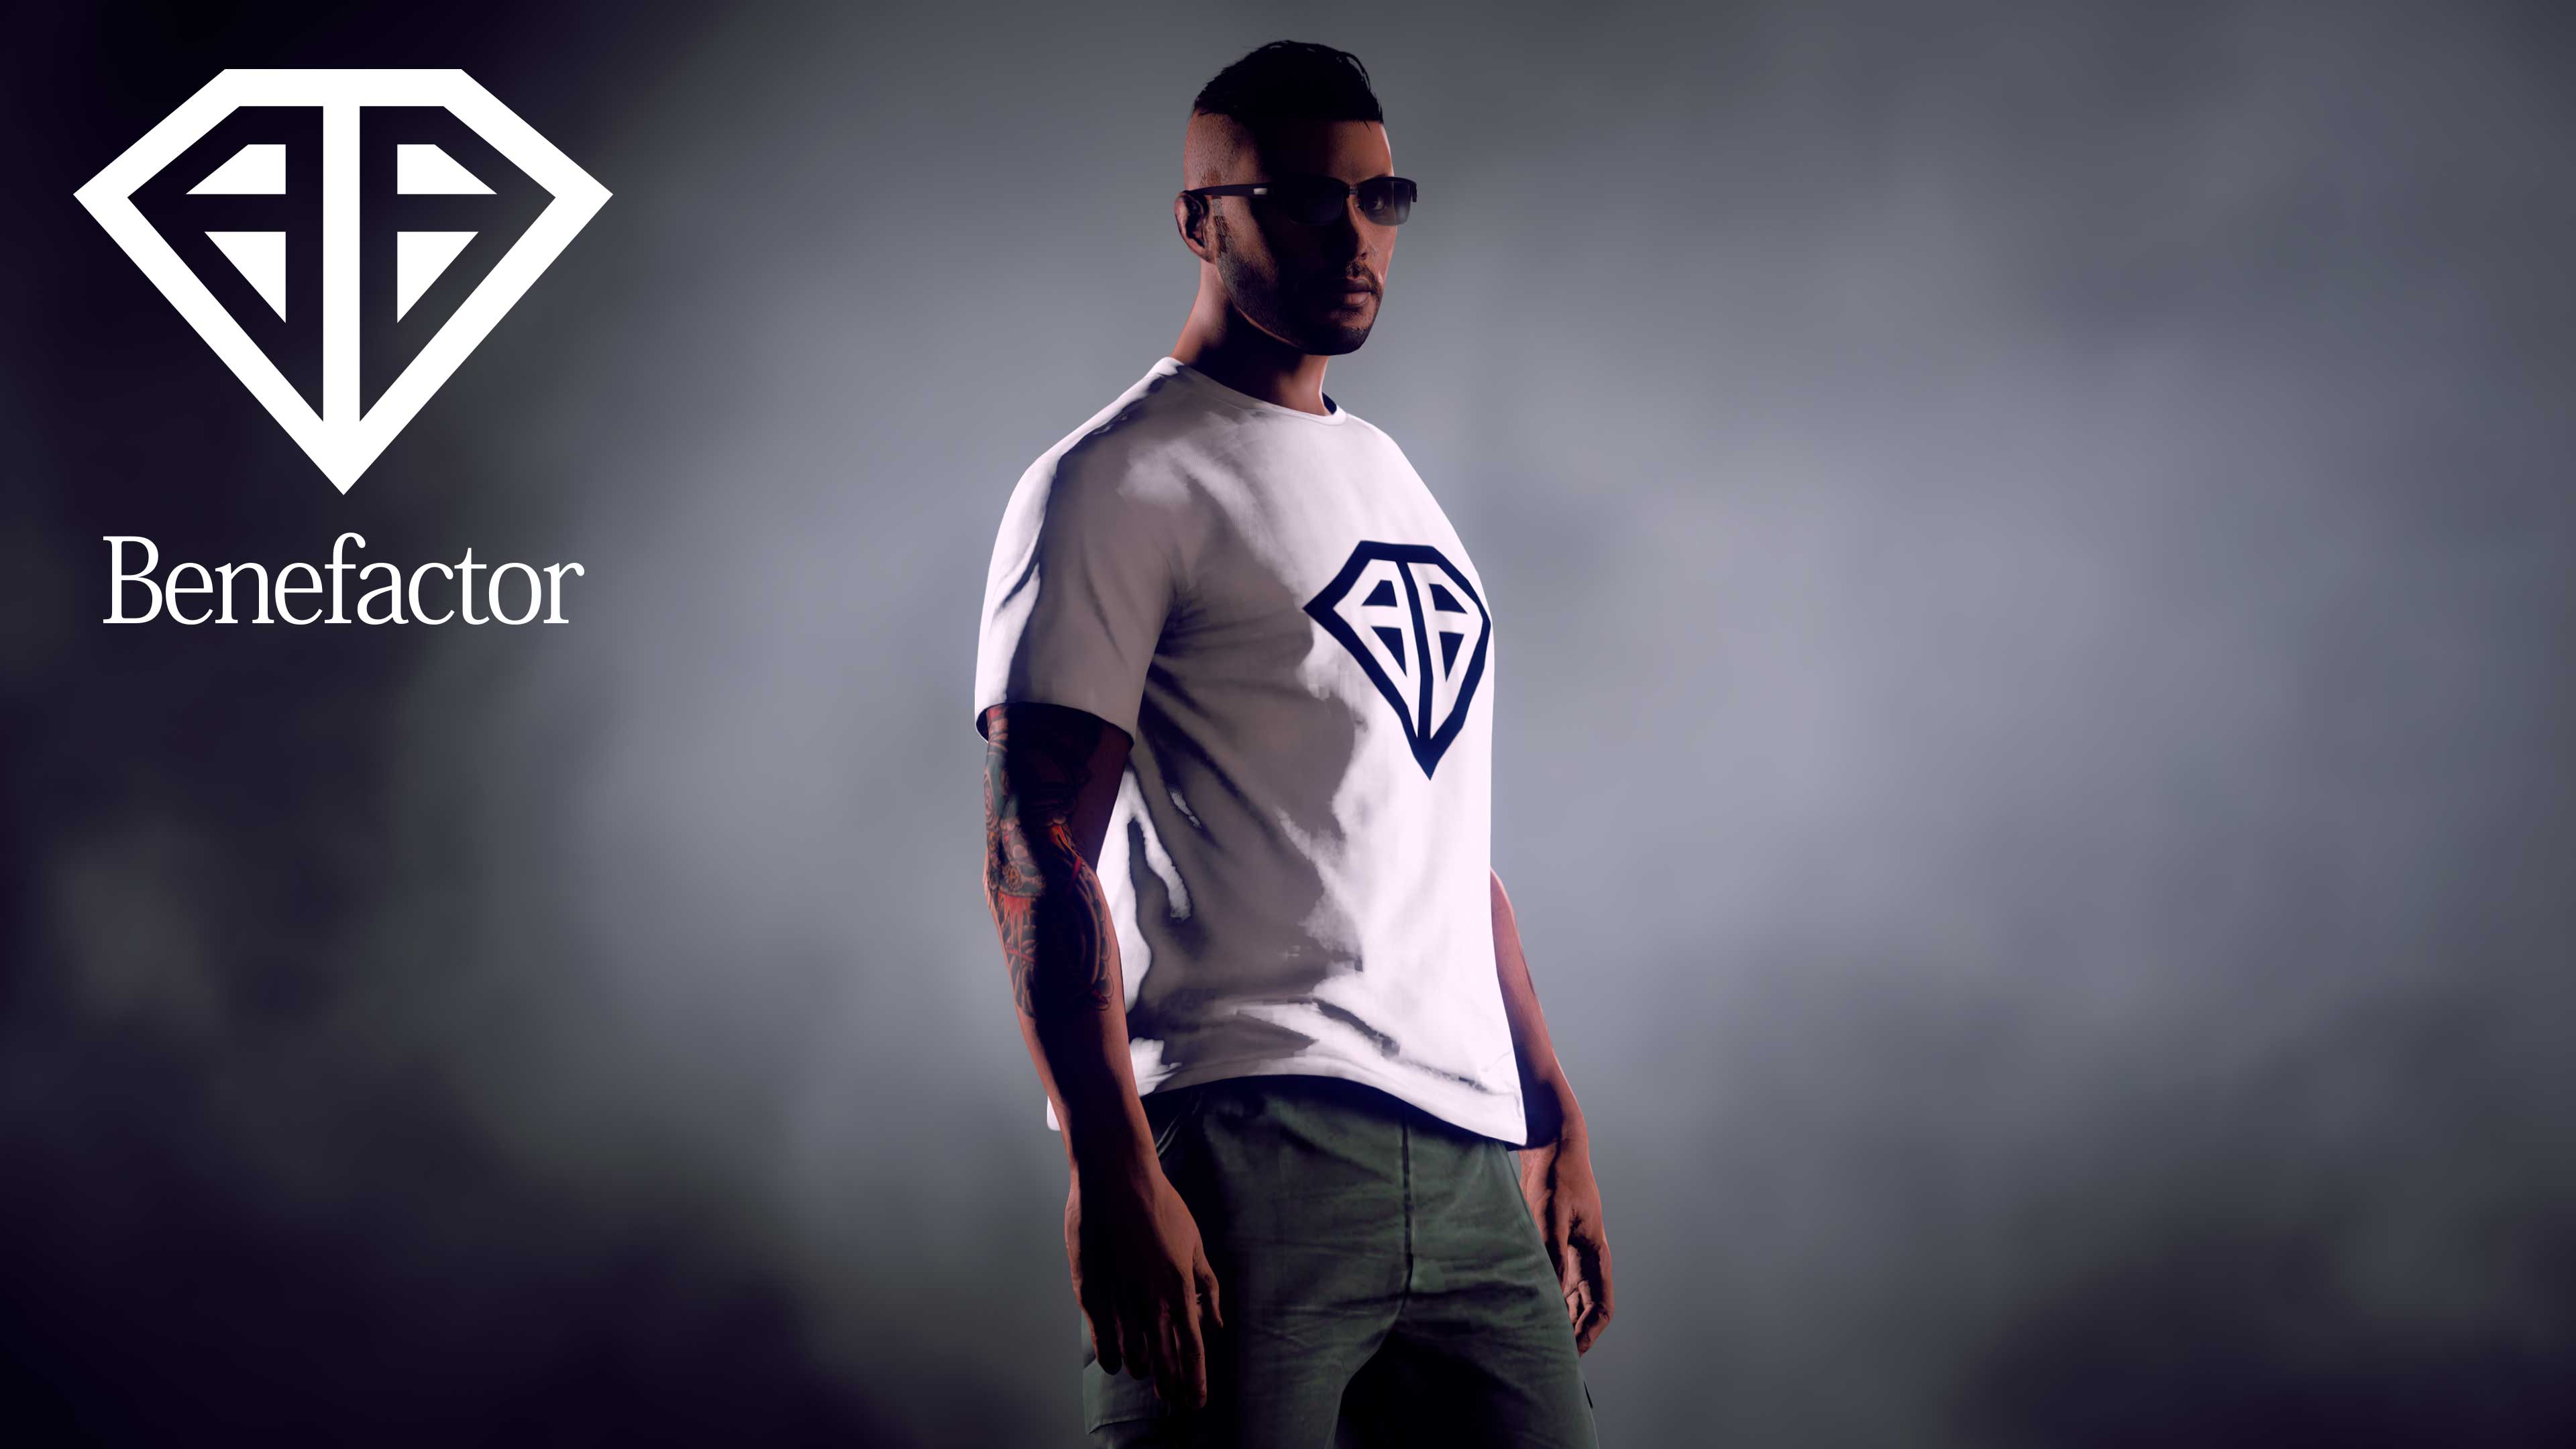 Um personagem de GTA Online veste uma Camiseta Benefactor com o logotipo preto em forma de diamante.